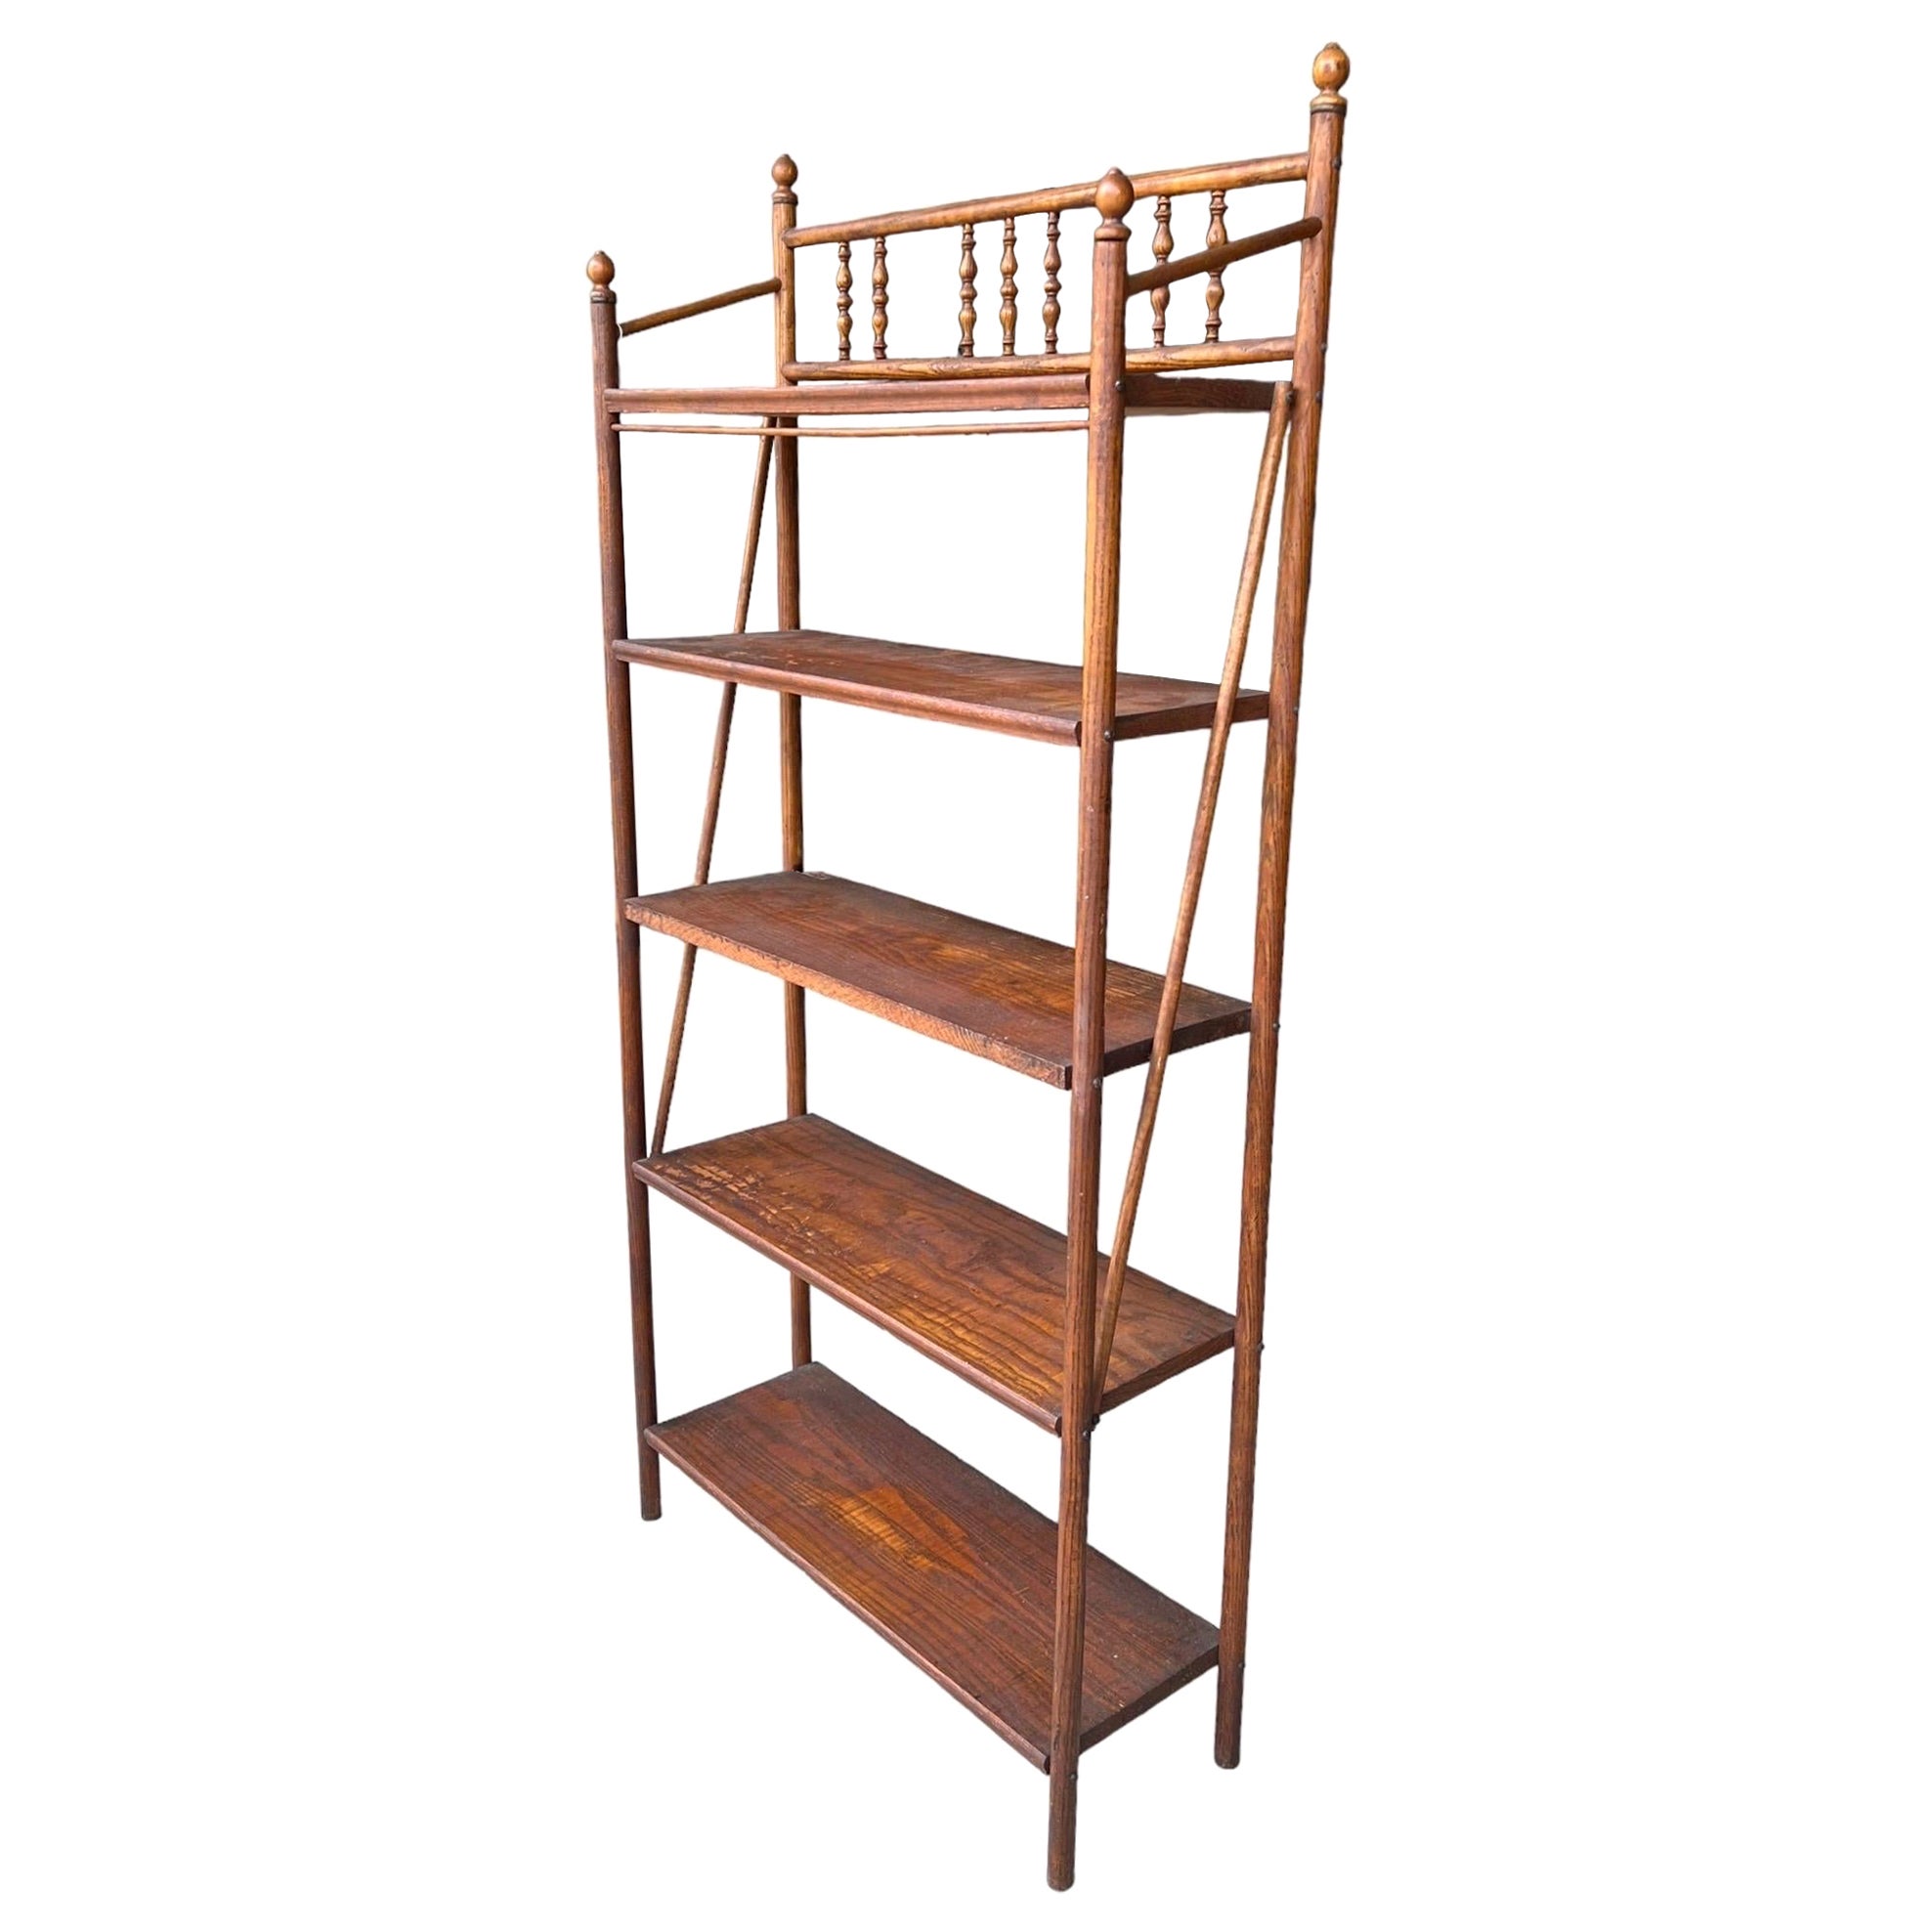 Antique Wood Etagere Book Shelf or Bookcase Bobbin Wooden Turned Details For Sale